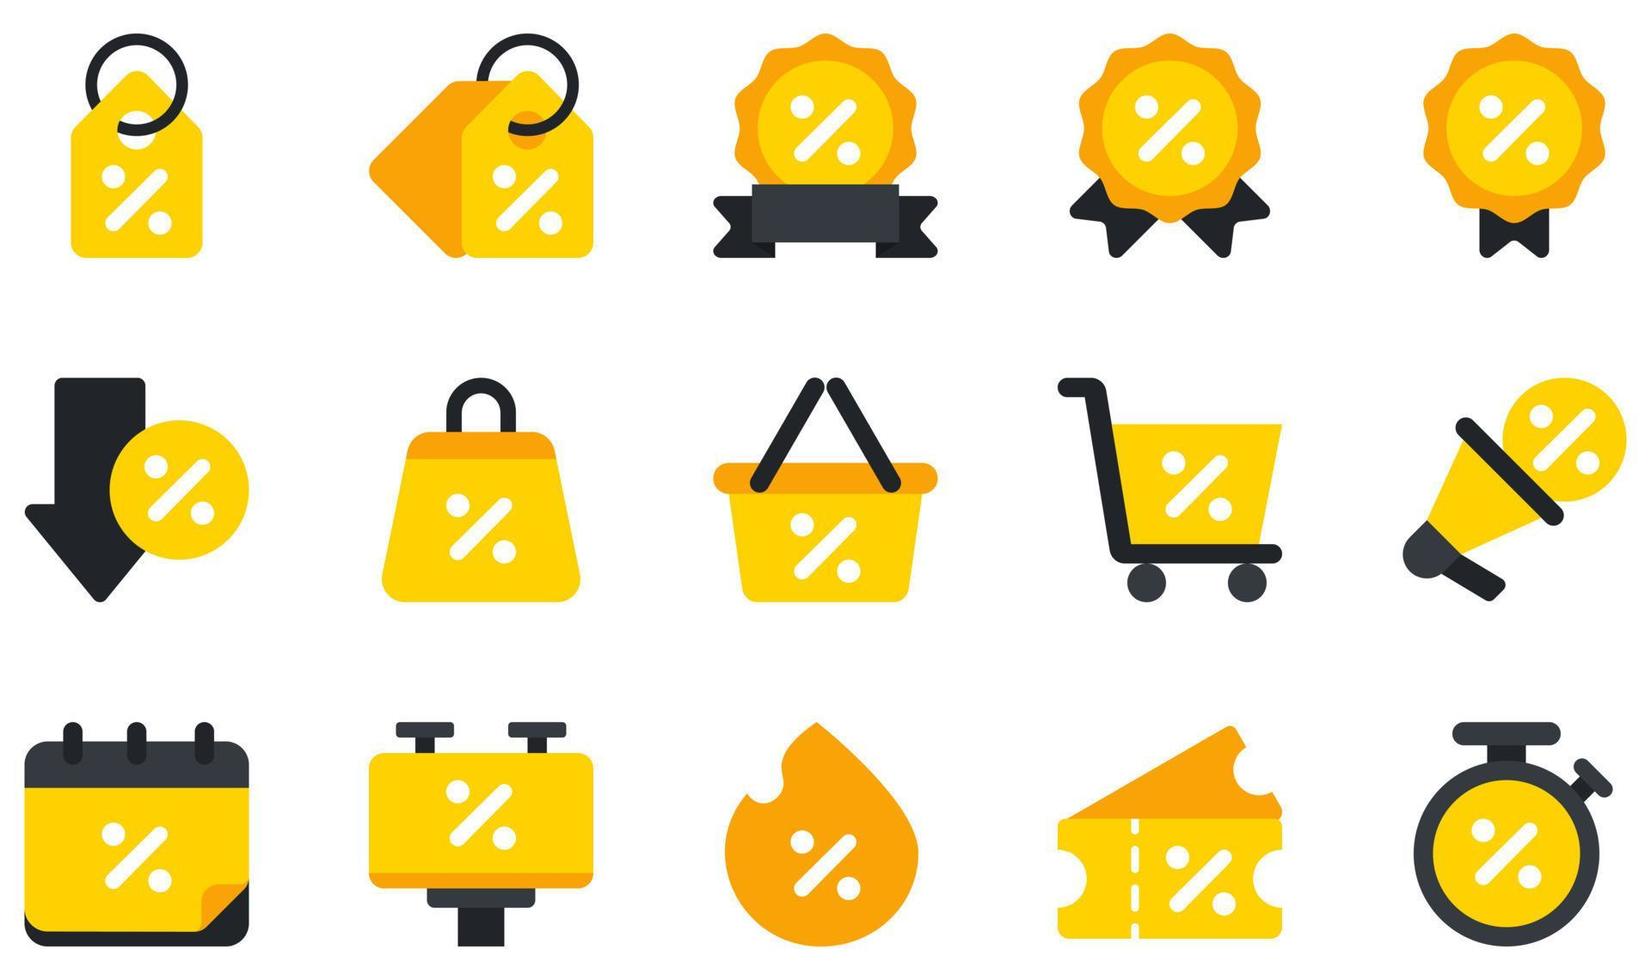 conjunto de ícones vetoriais relacionados ao desconto. contém ícones como etiqueta, desconto, promoção, cesta, compras, venda imperdível e muito mais. vetor